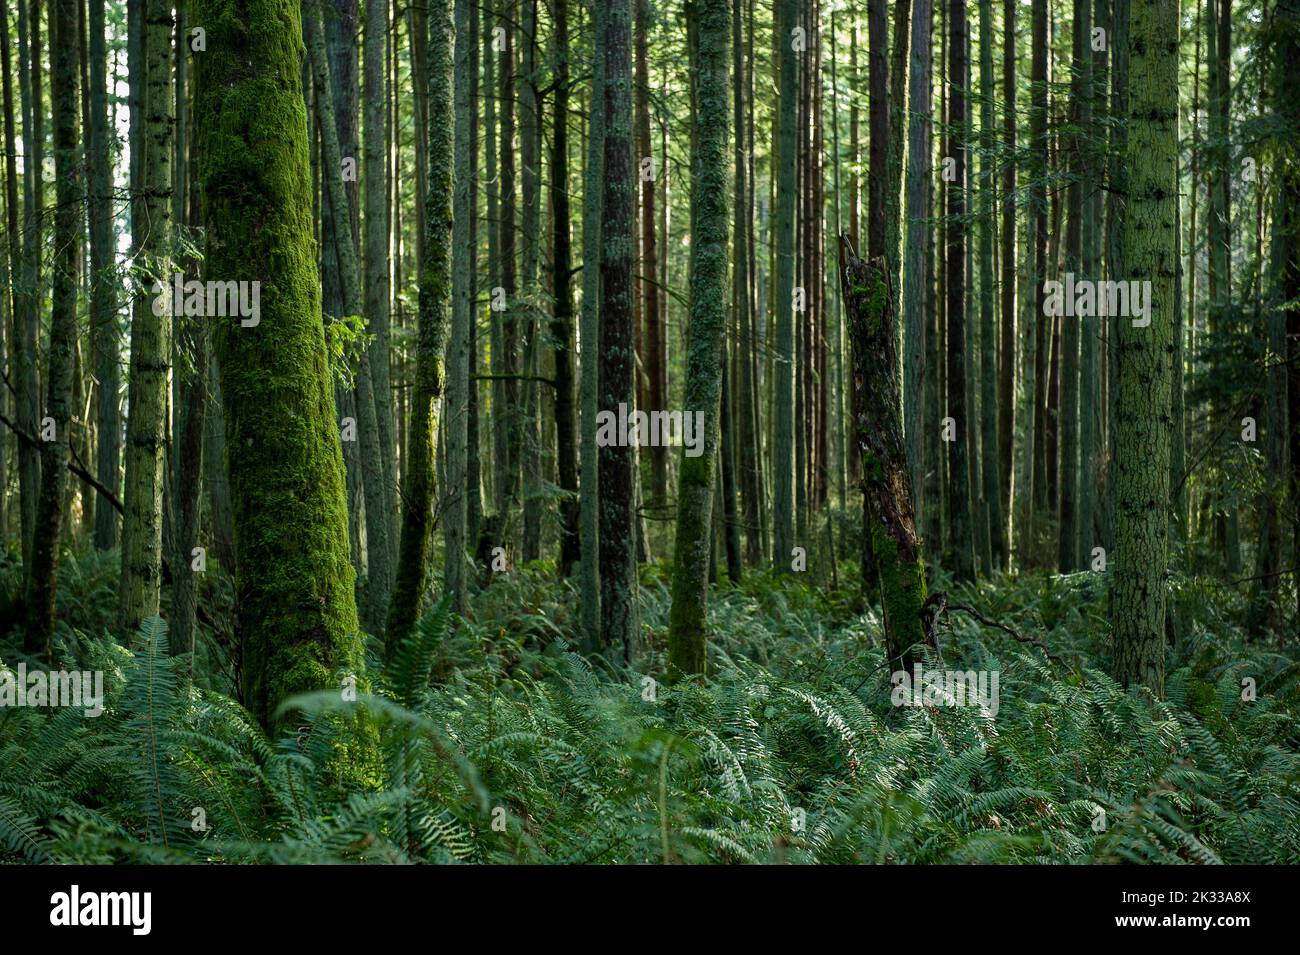 Un cliché pittoresque d'arbres couverts de mousse et d'autres plantes dans une forêt Banque D'Images